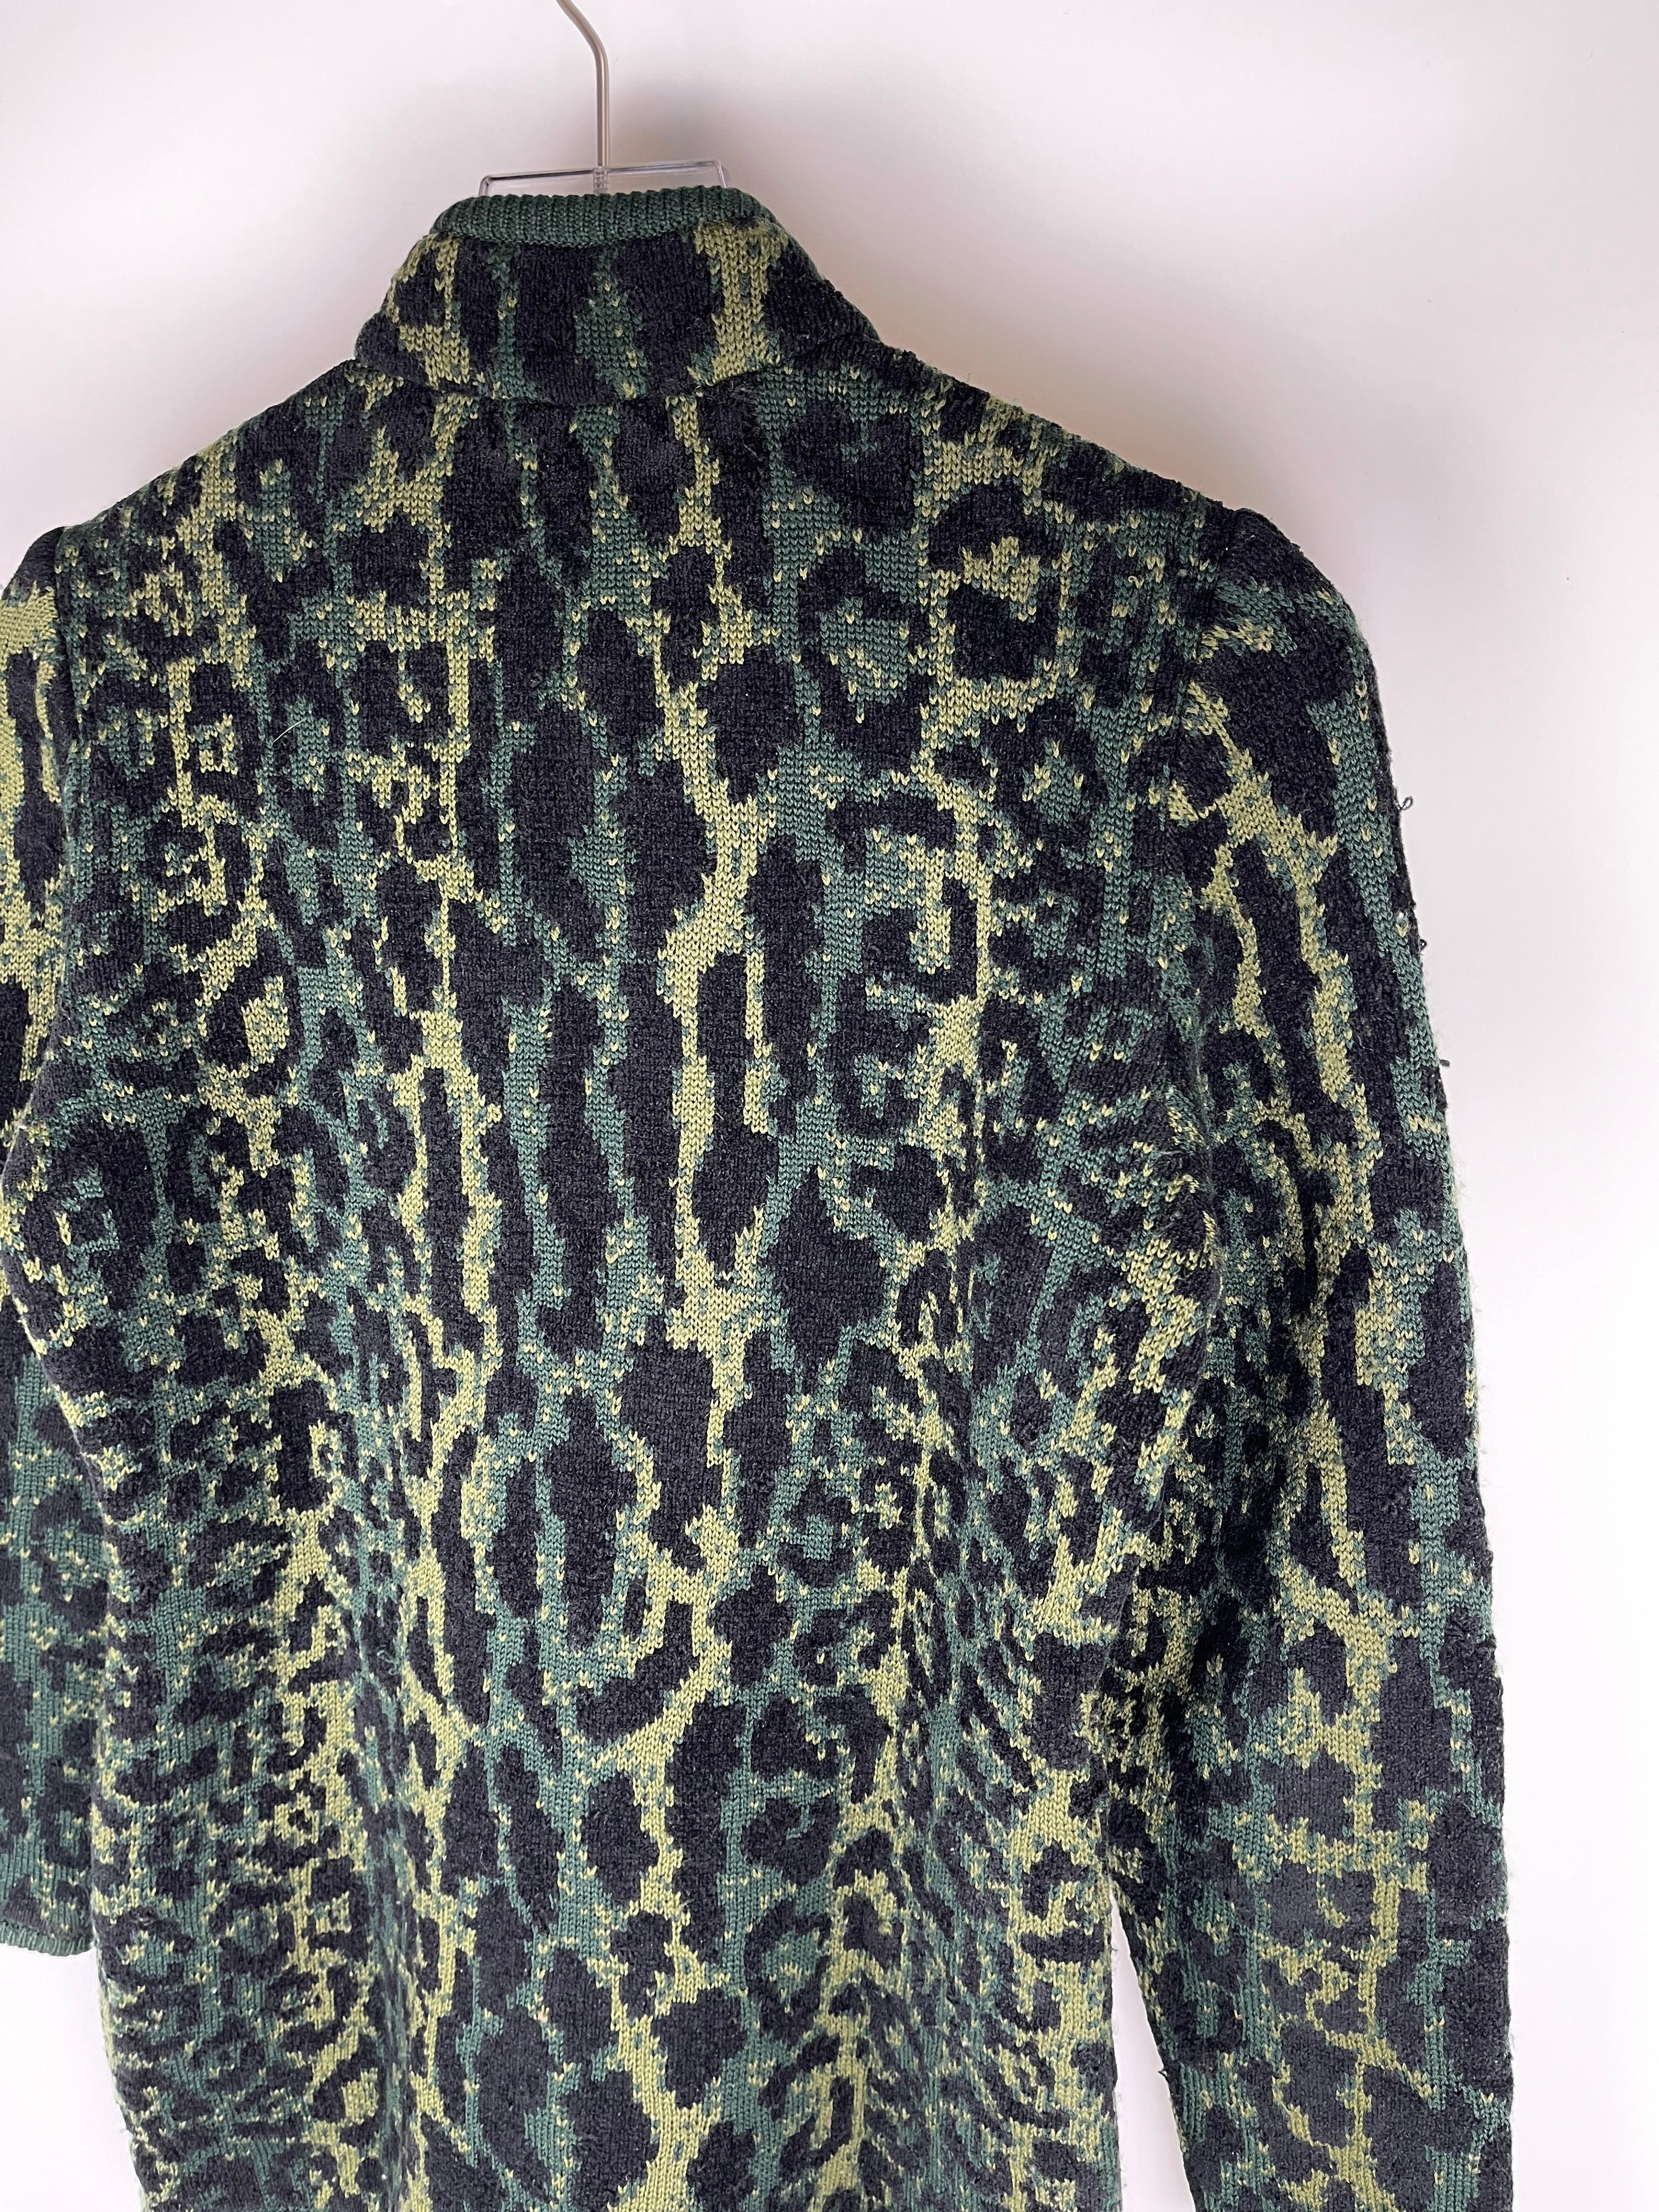 Pièce vintage de la ligne principale Yves Saint Laurent.

Cette pièce présente un imprimé de léopard des neiges vert, un ourlet côtelé et une demi-fermeture à glissière.

Taille : Medium, s'adapte à la taille. Il peut également convenir à un homme